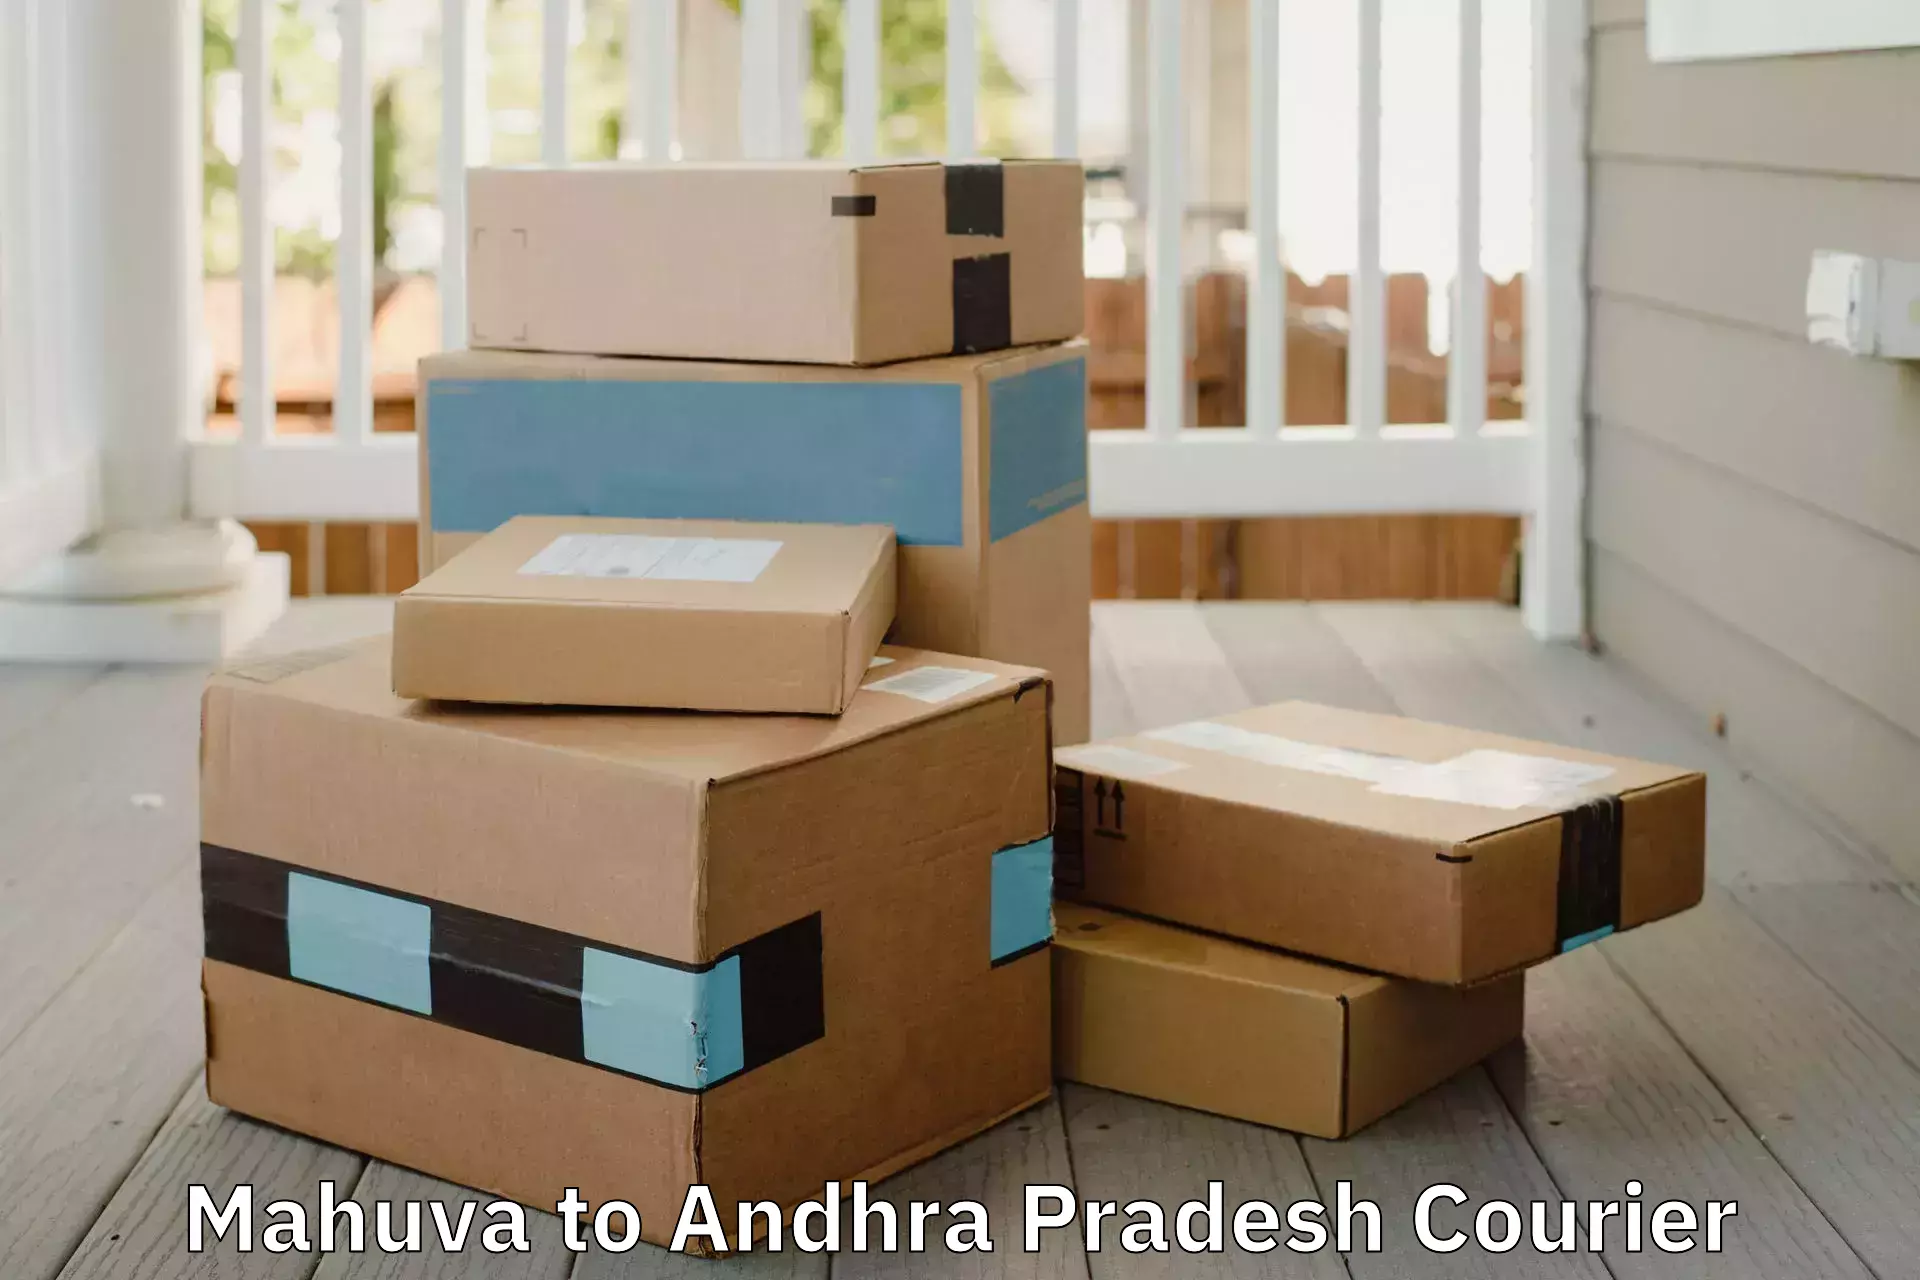 Household logistics services in Mahuva to Velgodu